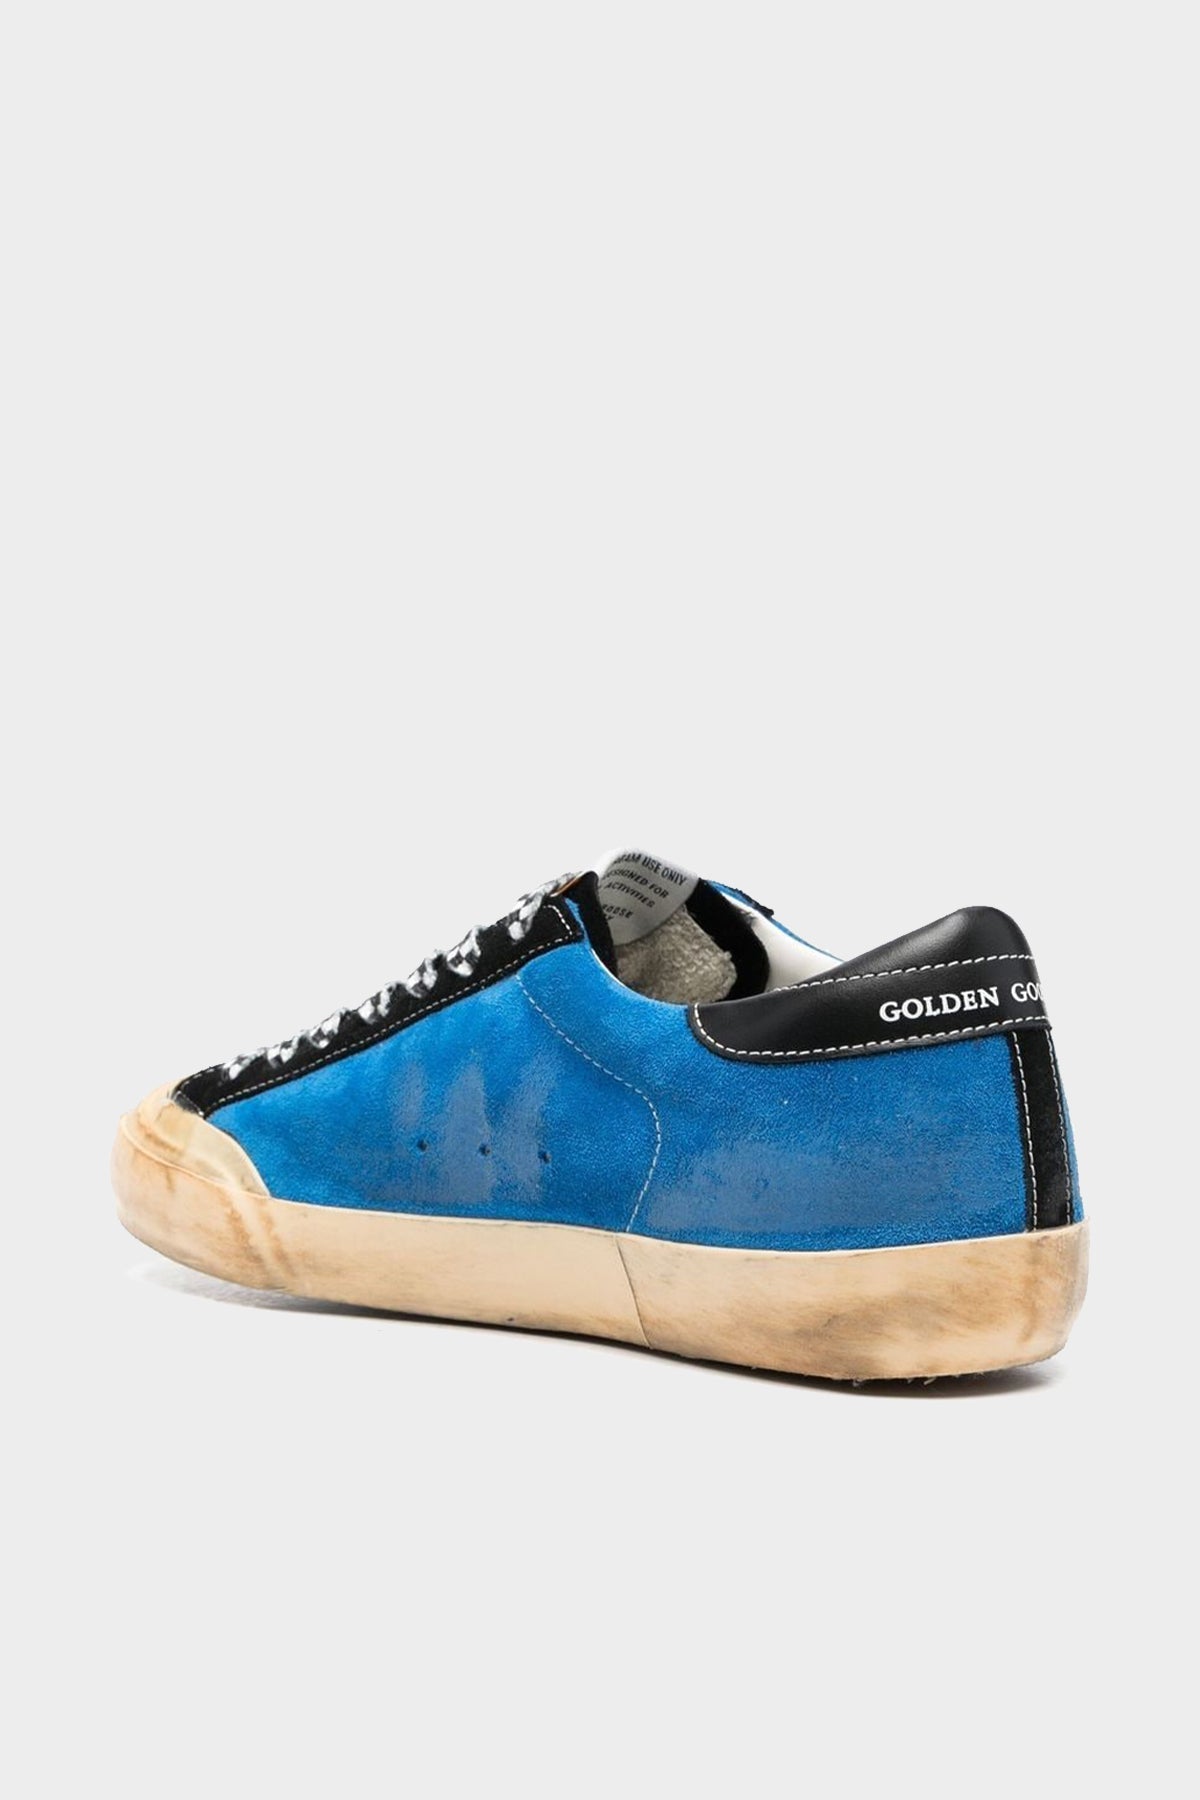 Super-Star Blue Suede Leather Men Sneaker - shop-olivia.com